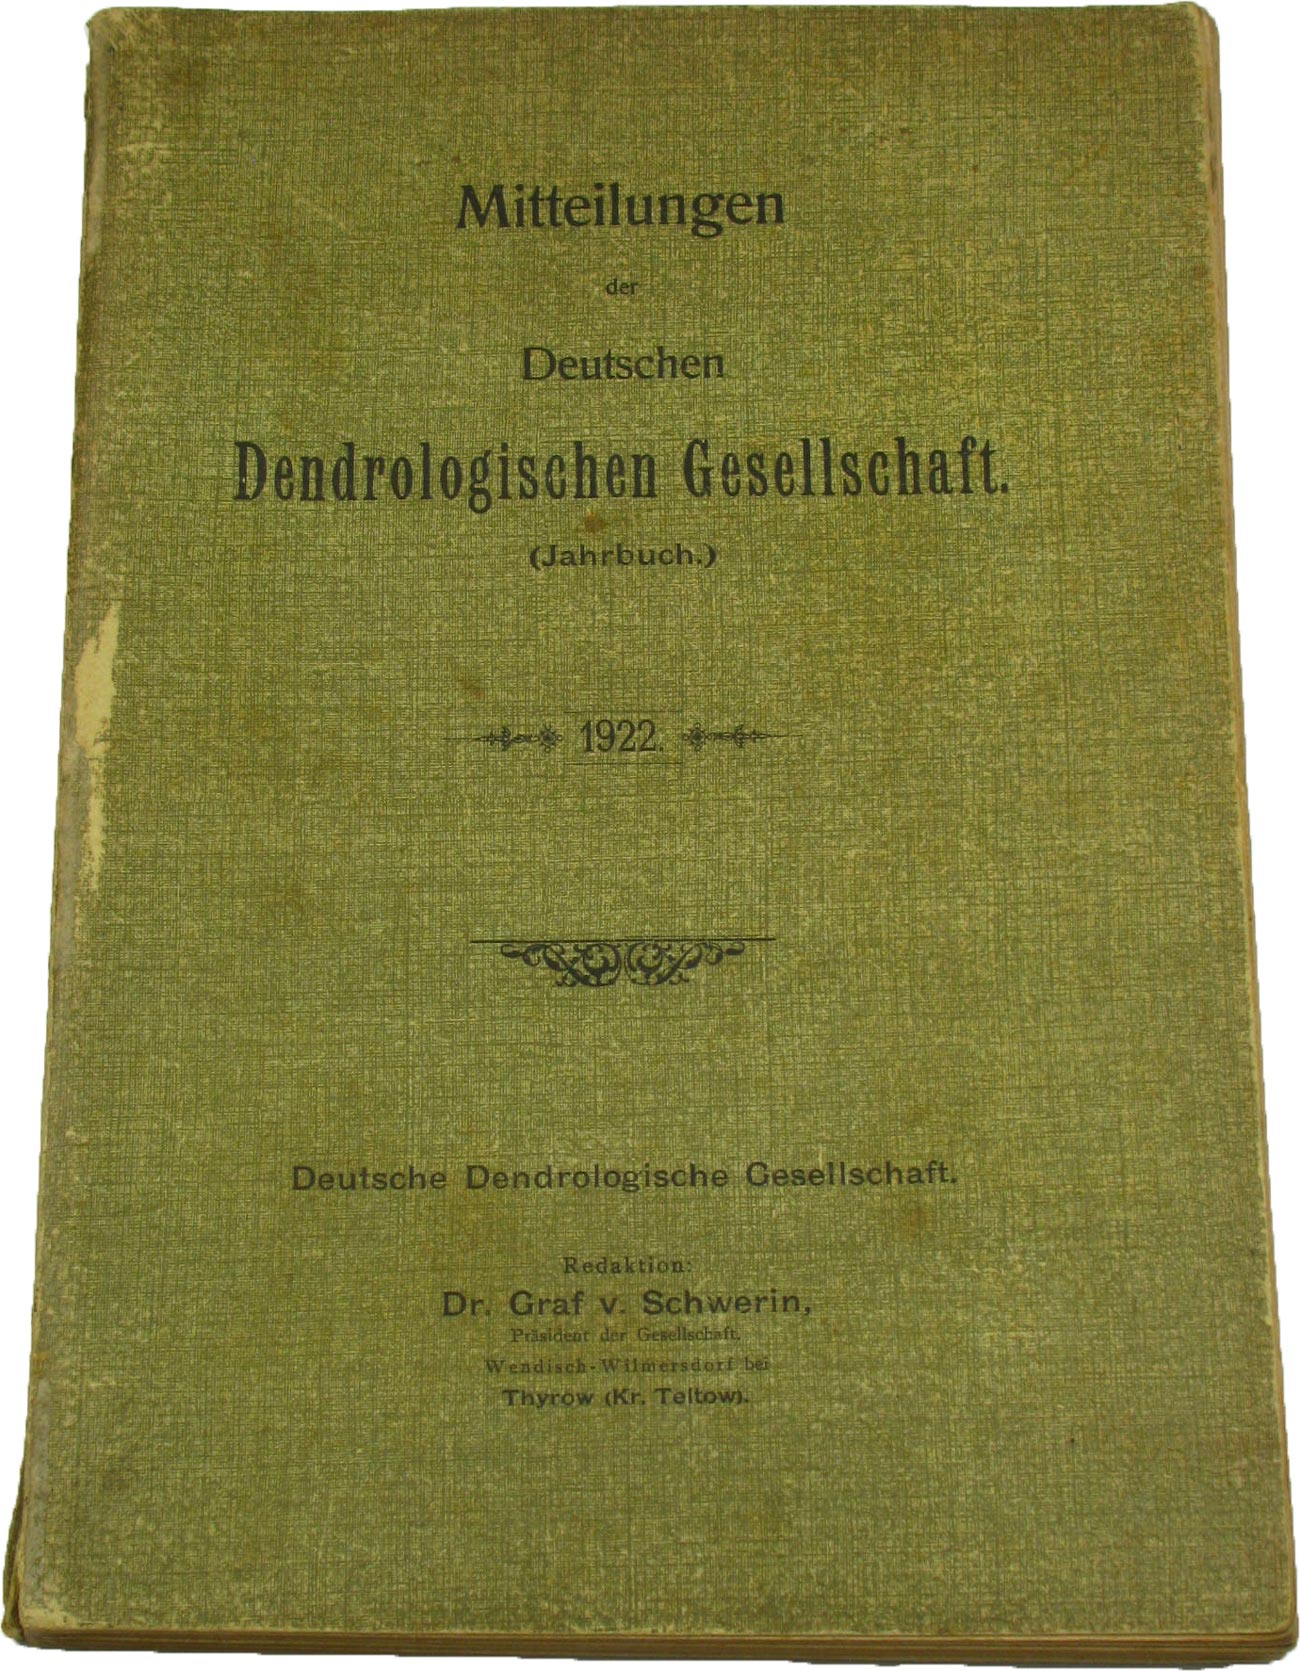 Dr. Graf v. Schwerin (Redaktion):  Mitteilungen der Deutschen Dendrologischen Gesellschaft (Jahrbuch 1922) 